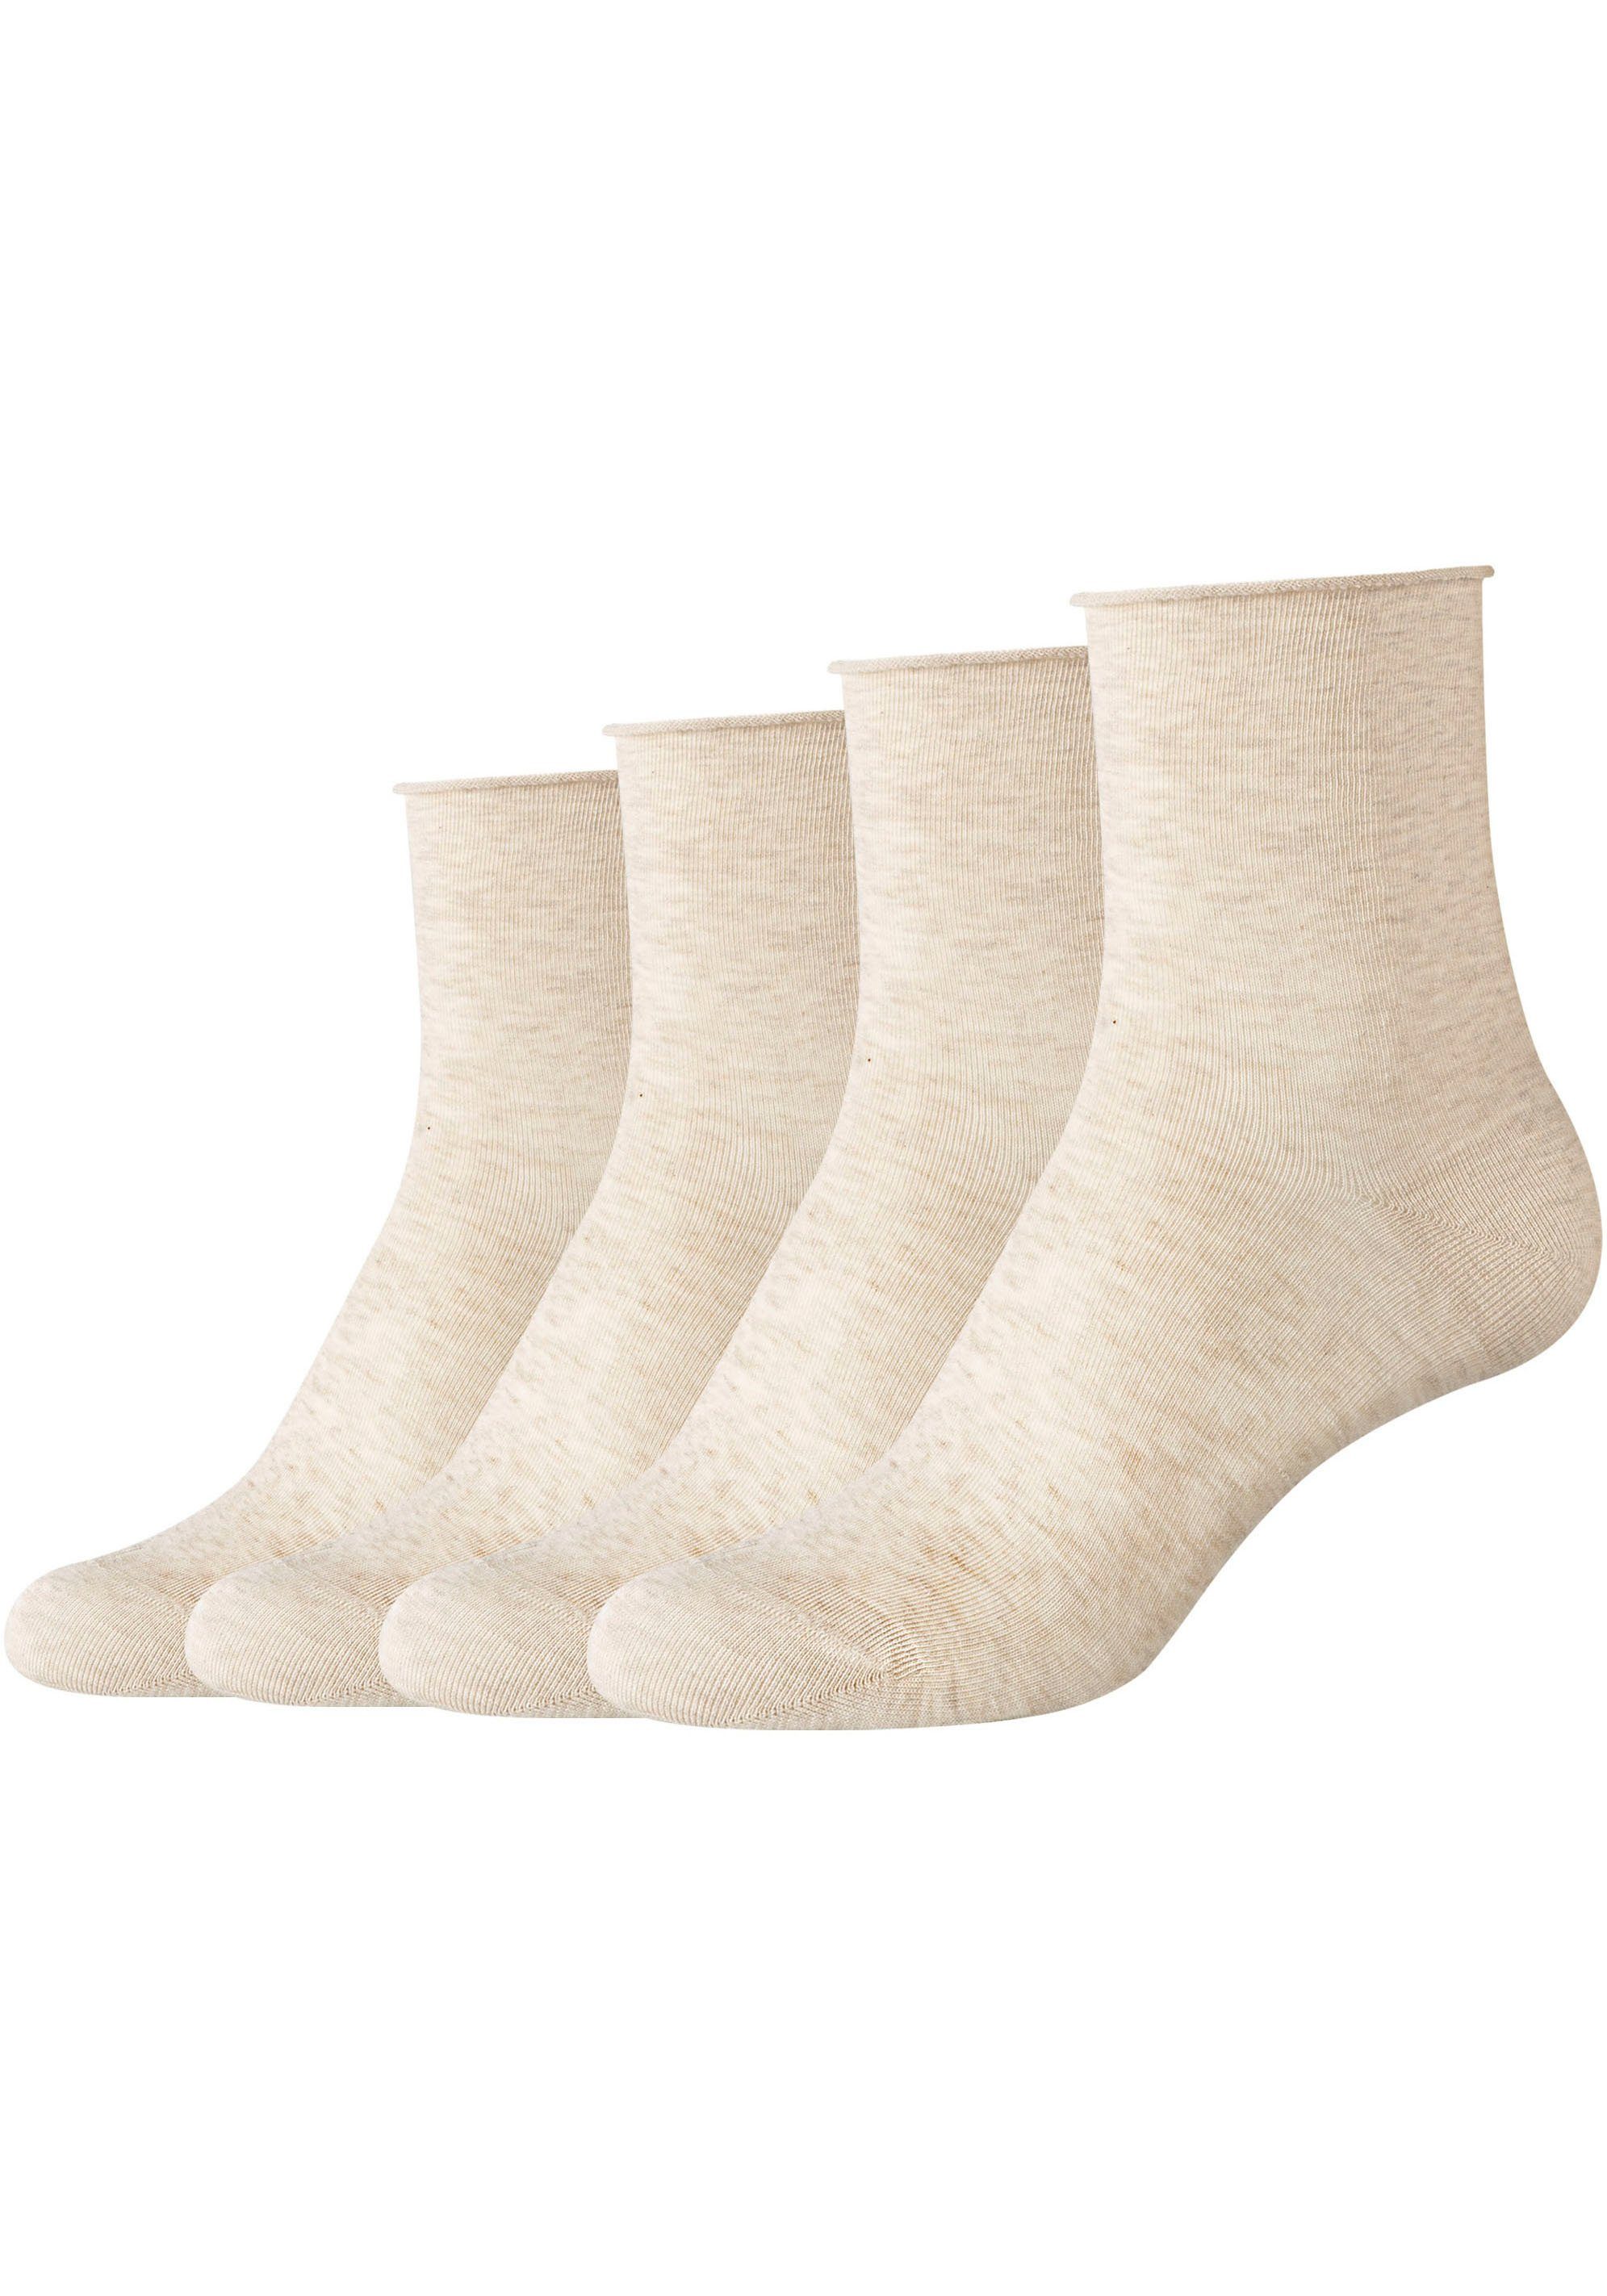 Socken Mit beige-meliert 4-Paar) Camano (Packung, Rollrand